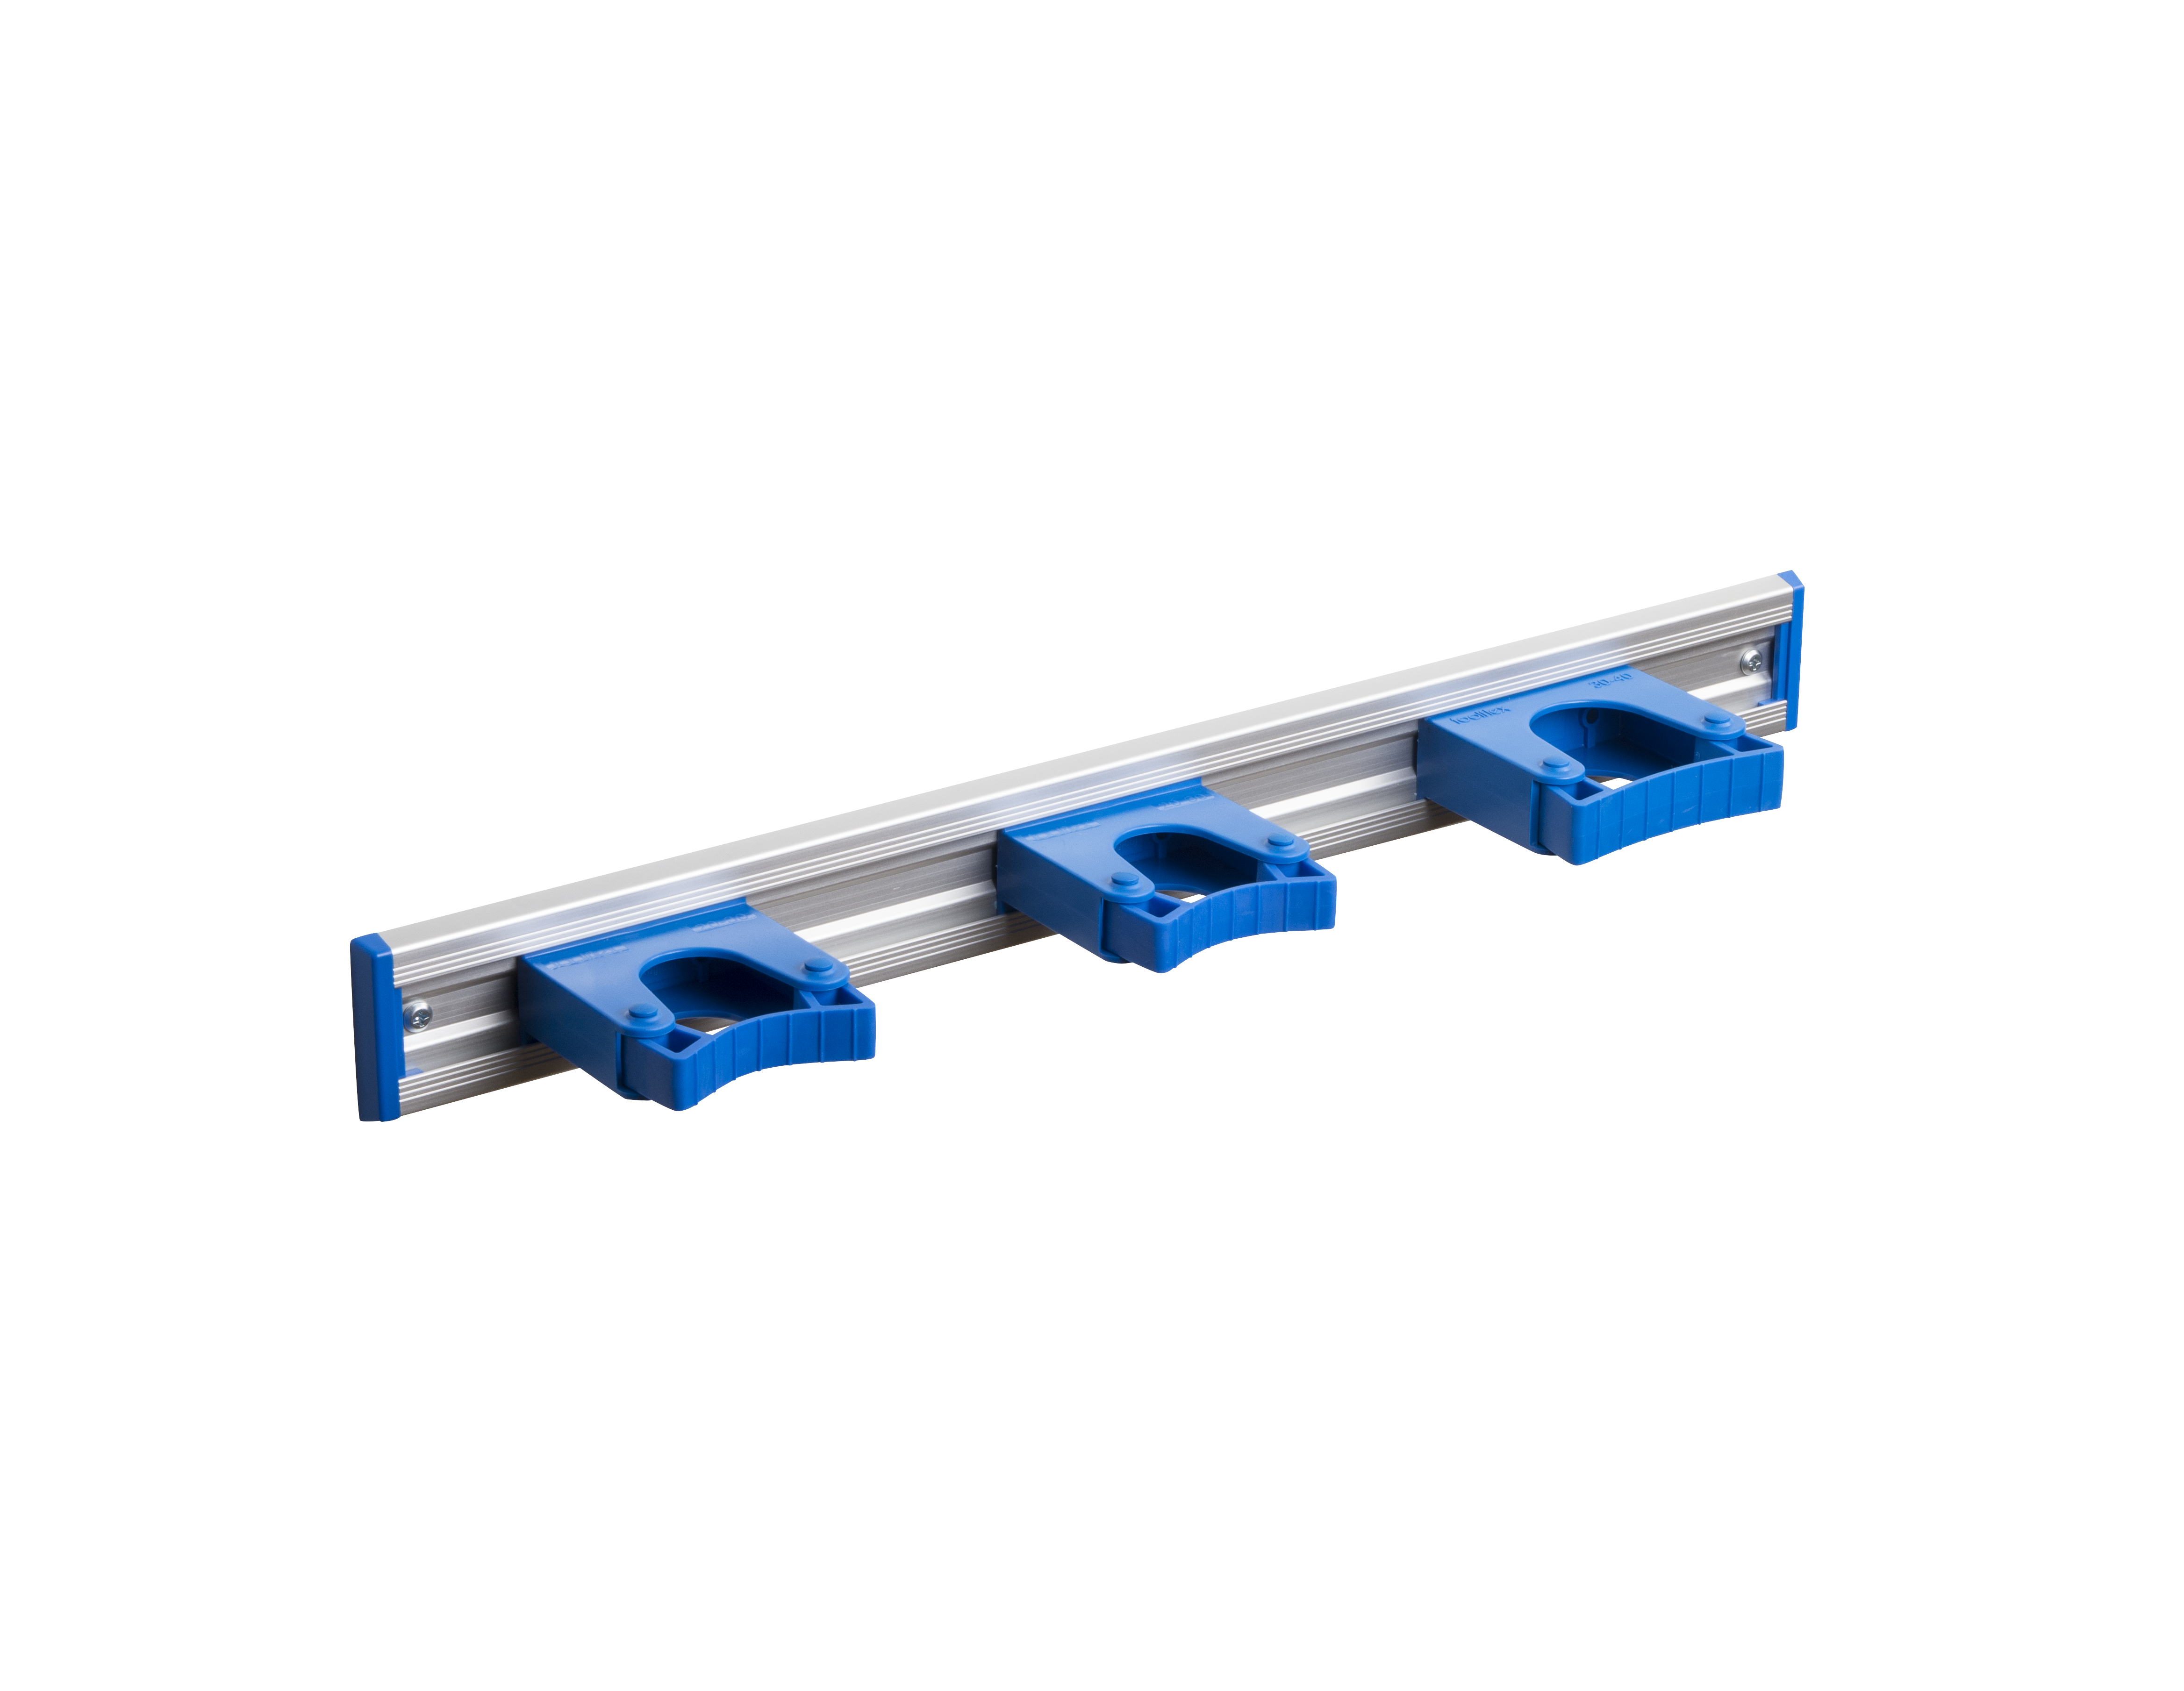 Toolflex Alu-Schiene 50 cm mit blauen Endstücken, bestückt mit 3 blauen Haltern (2 x 20-30 mm, 1 x 30-40 mm)